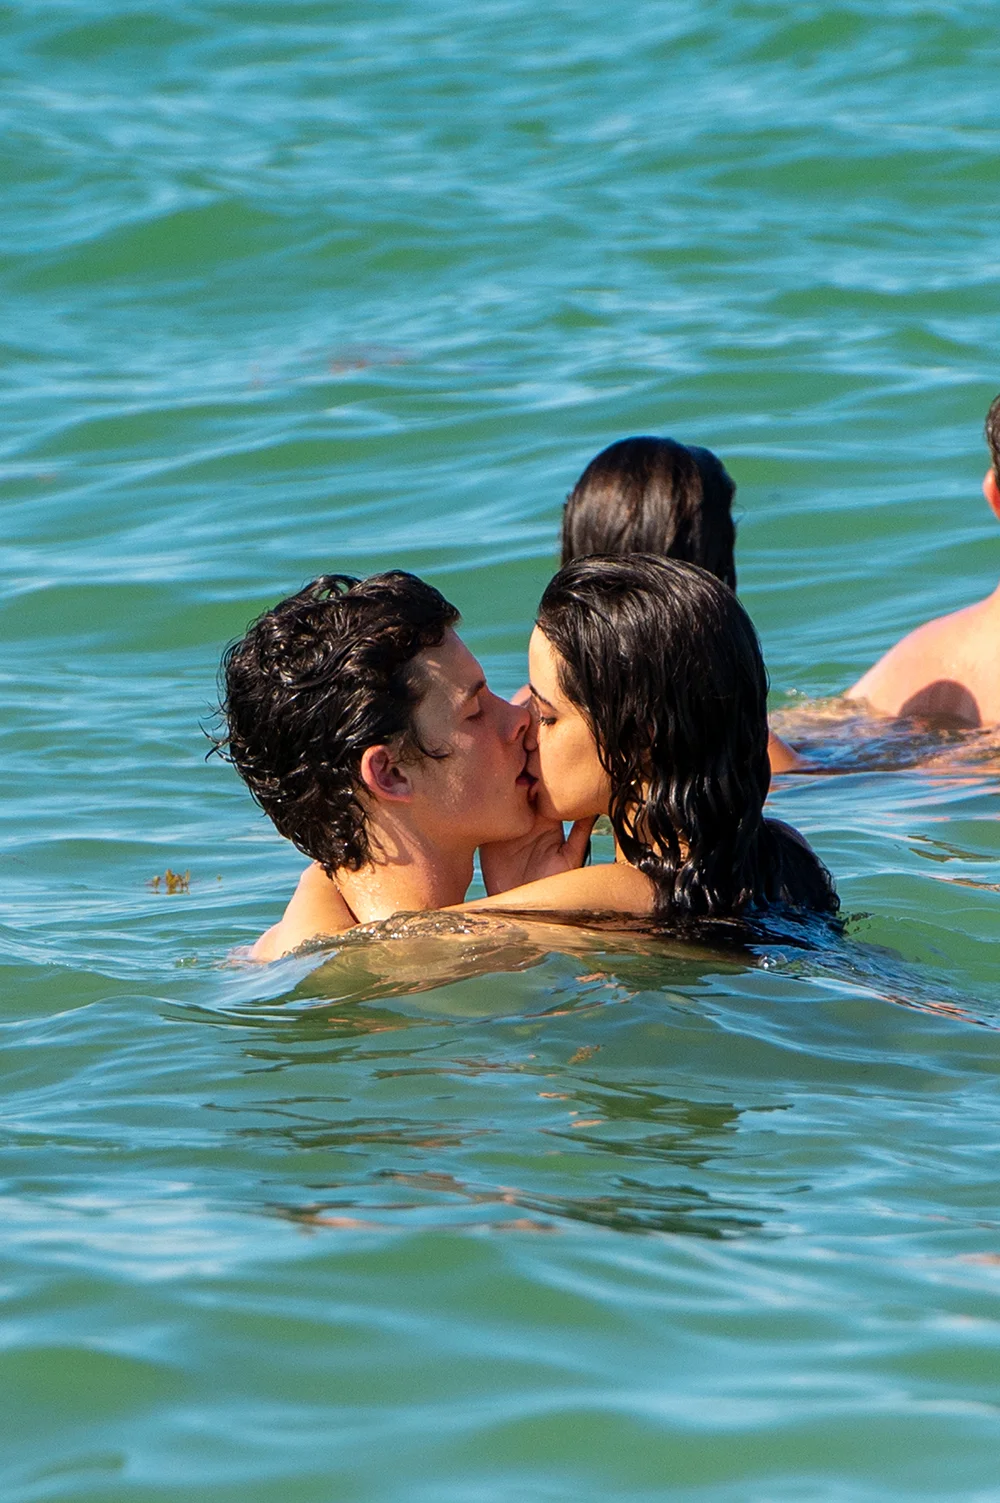 Камила Кабельо и Шон Мендес подтвердили свой роман страстным поцелуем в воде - фото 443513